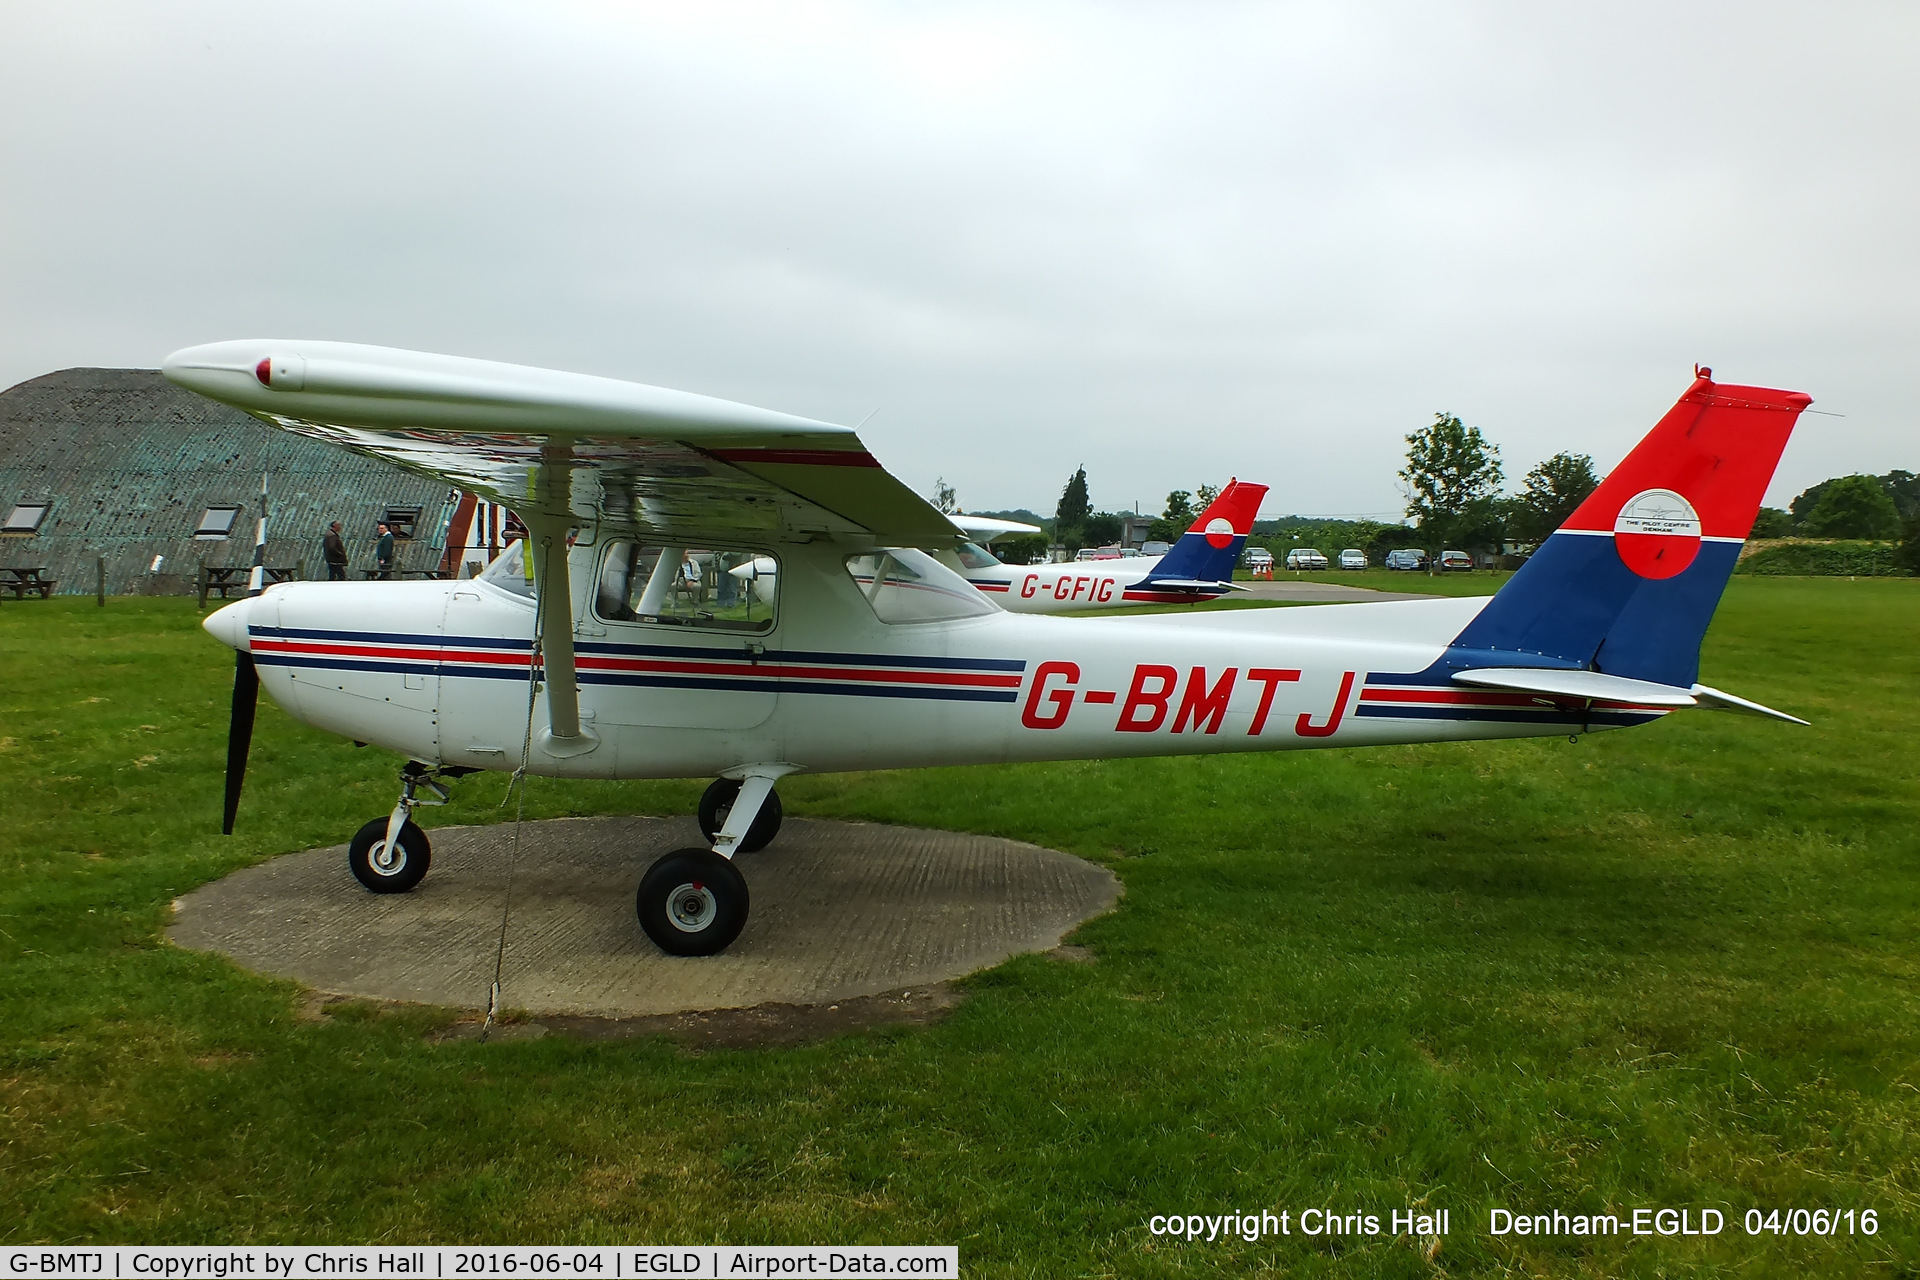 G-BMTJ, 1981 Cessna 152 C/N 152-85010, at Denham